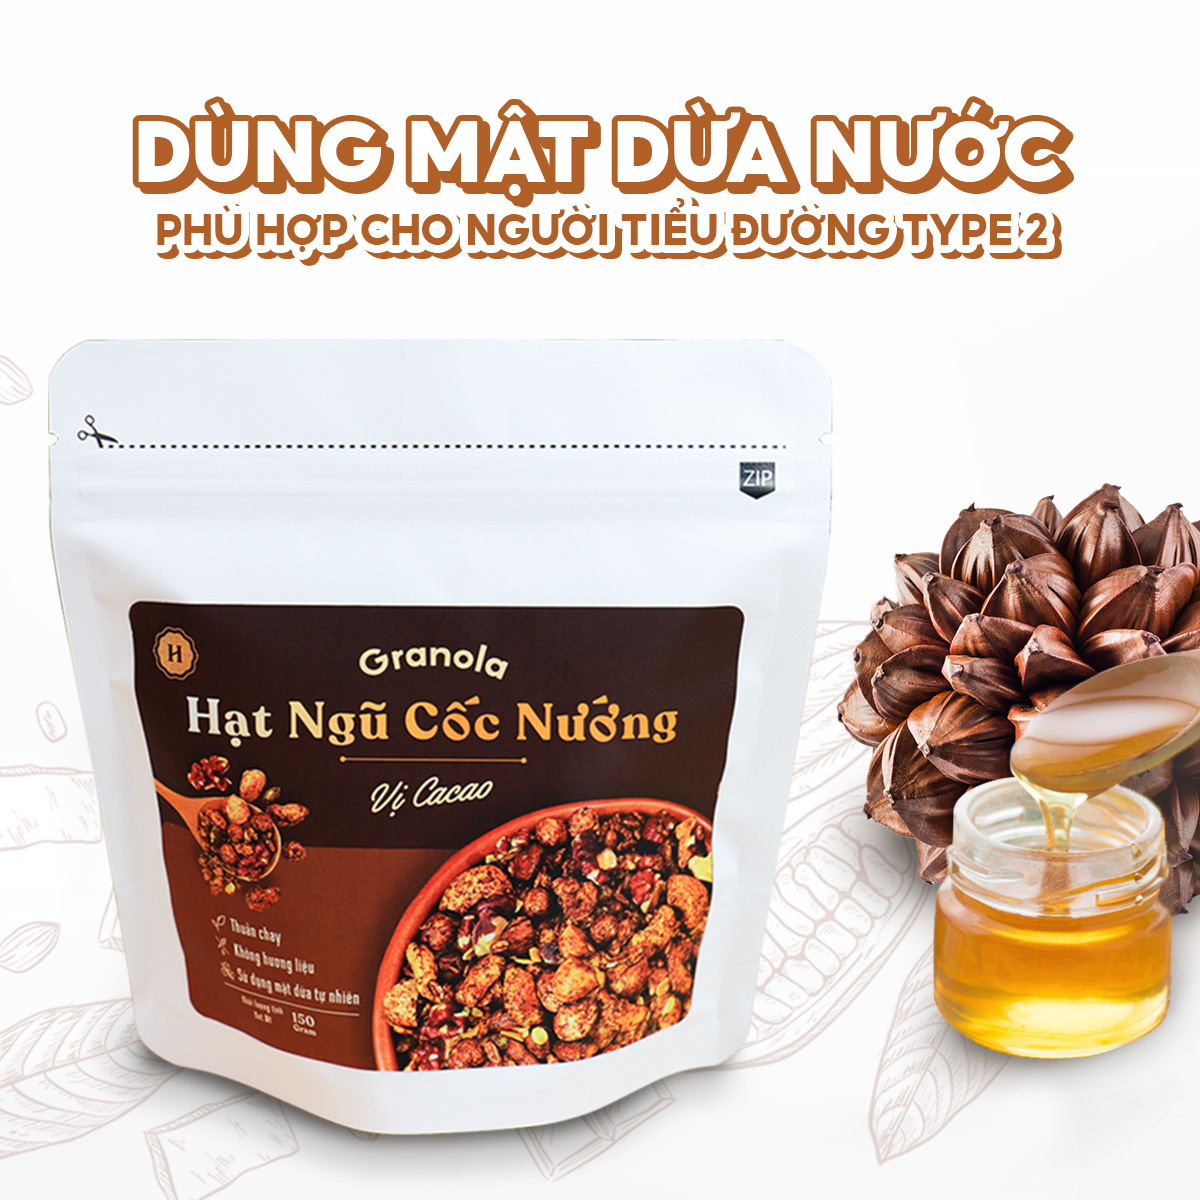 Granola nướng giòn tan - Dùng mật dừa nước, 0 trái cây sấy, GI thấp - Hạt ngũ cốc giảm cân - HeydayCacao - Vị Cacao